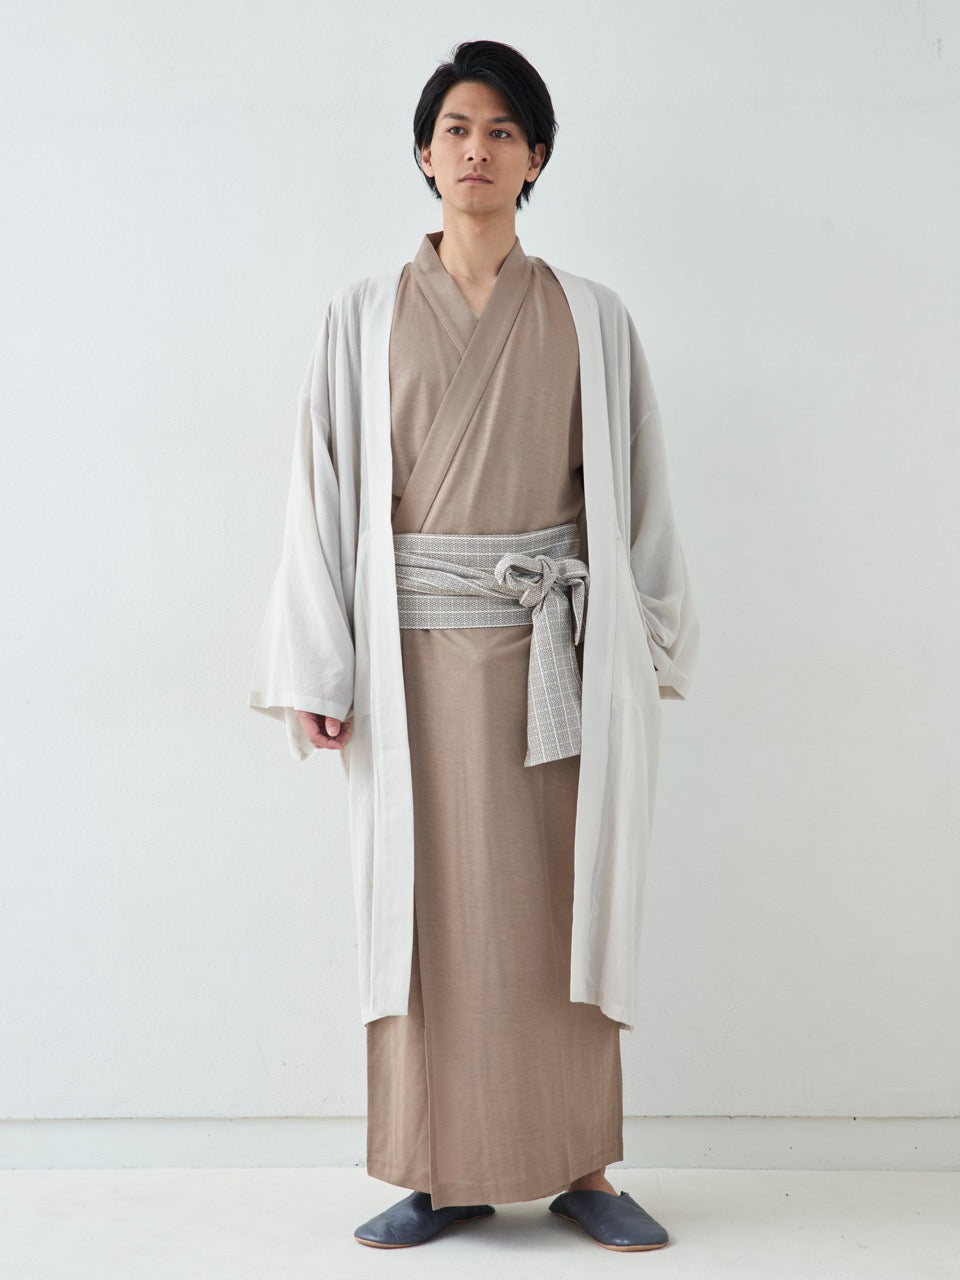 
                  
                    羽織ガウン・ロング(綿)-ホワイト-   Haori Gown Long(Cotton)-White-
                  
                